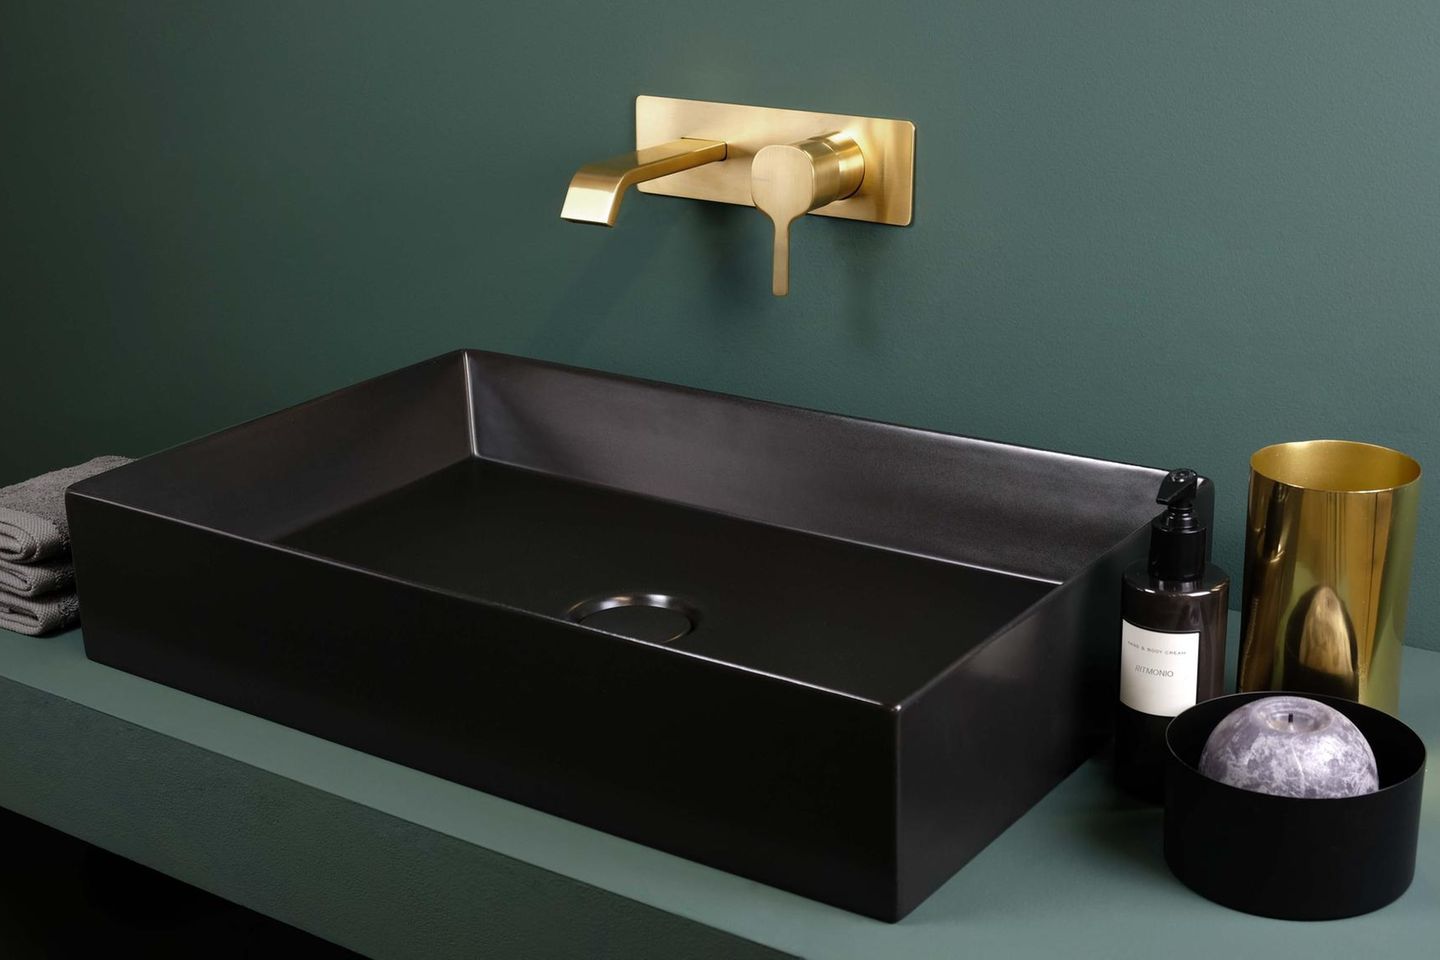 Badezimmer und Waschbecken in Tannengrün und Schwarz mit einer Unterputzarmatur in Messing